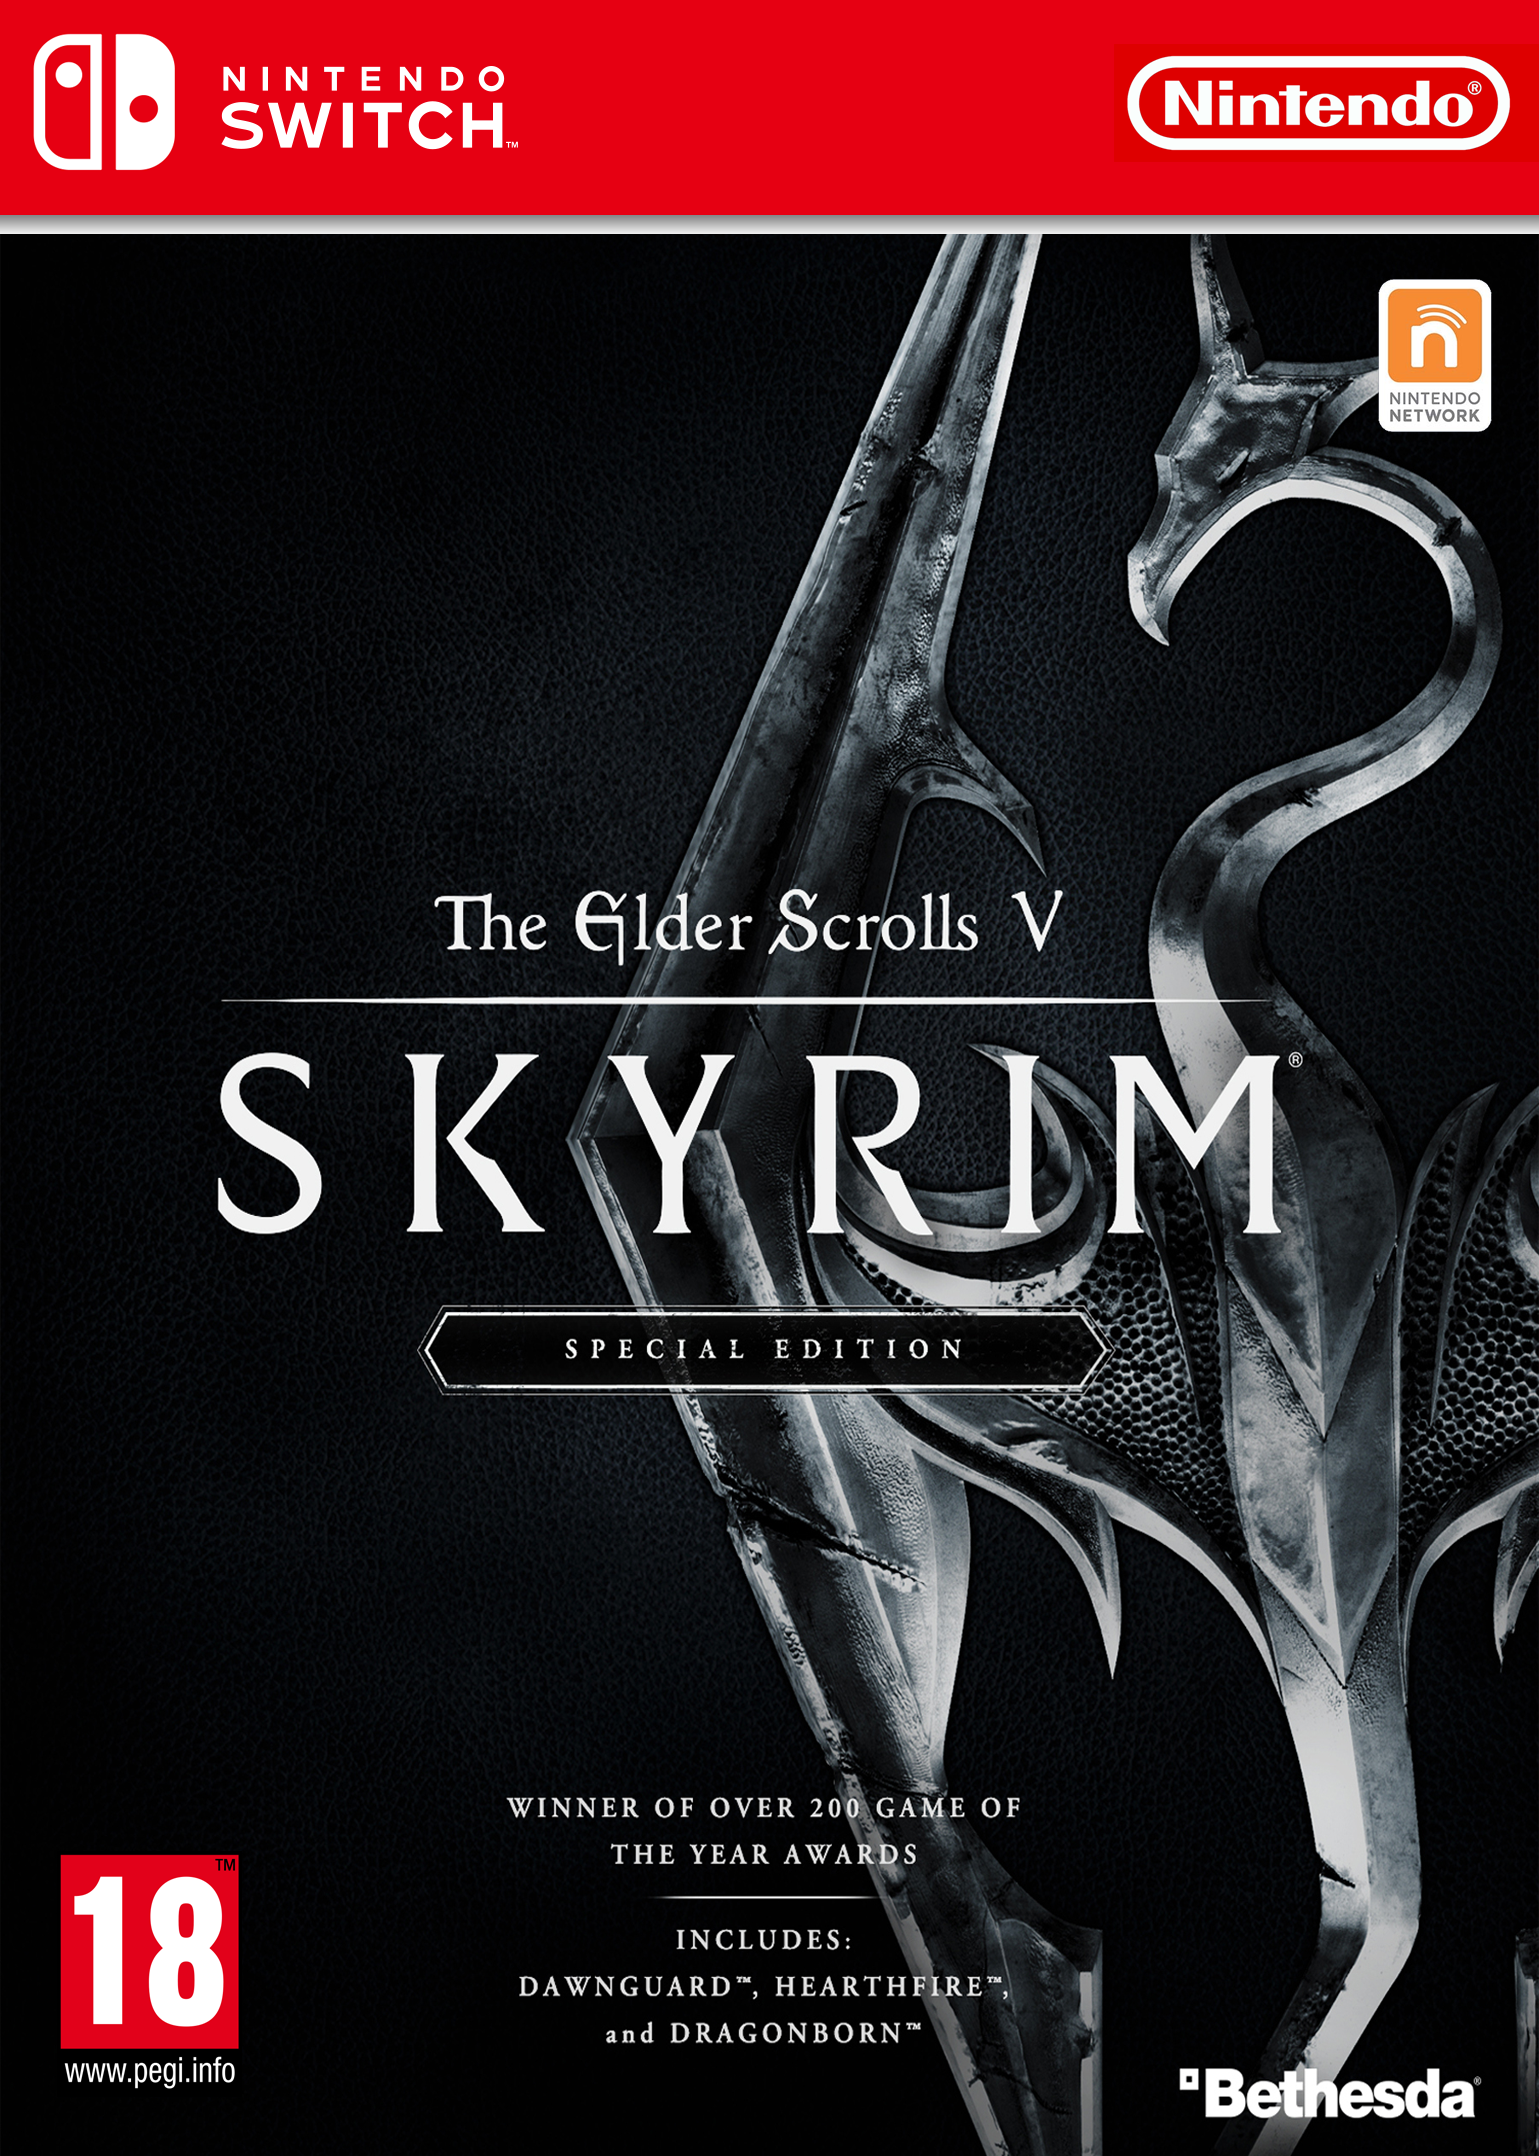 Skyrim Special Edition Nintendo Switch box cover